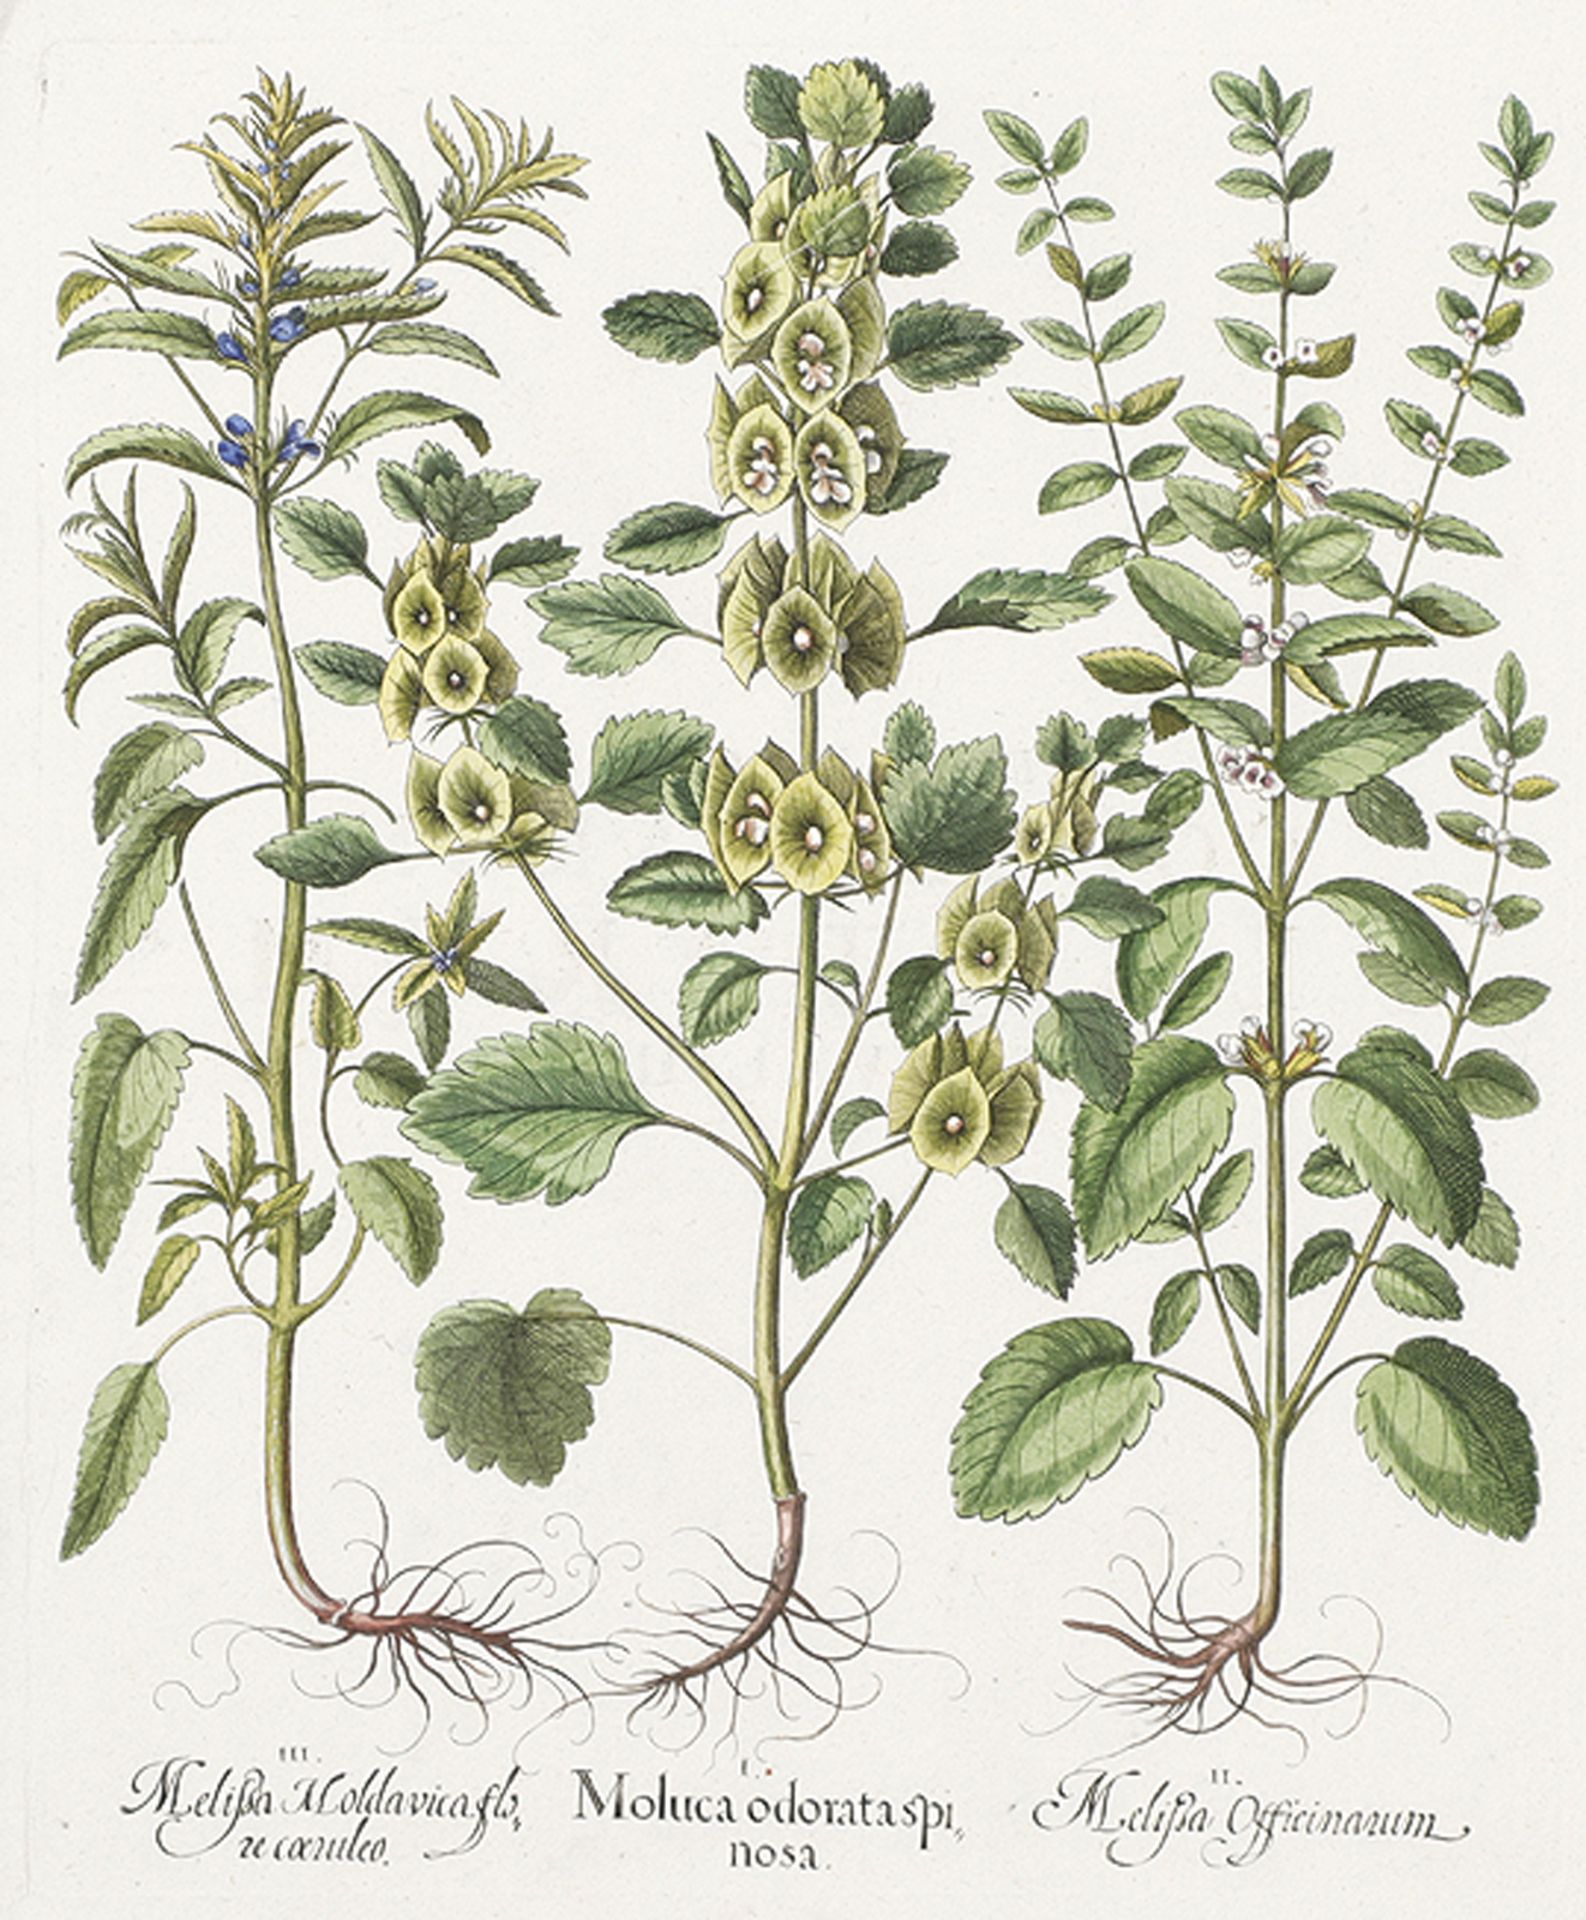 BOTANIK: Moluca odorata spinosa; Melißa Officinarum; Melißa Moldavica flore coeruleo.